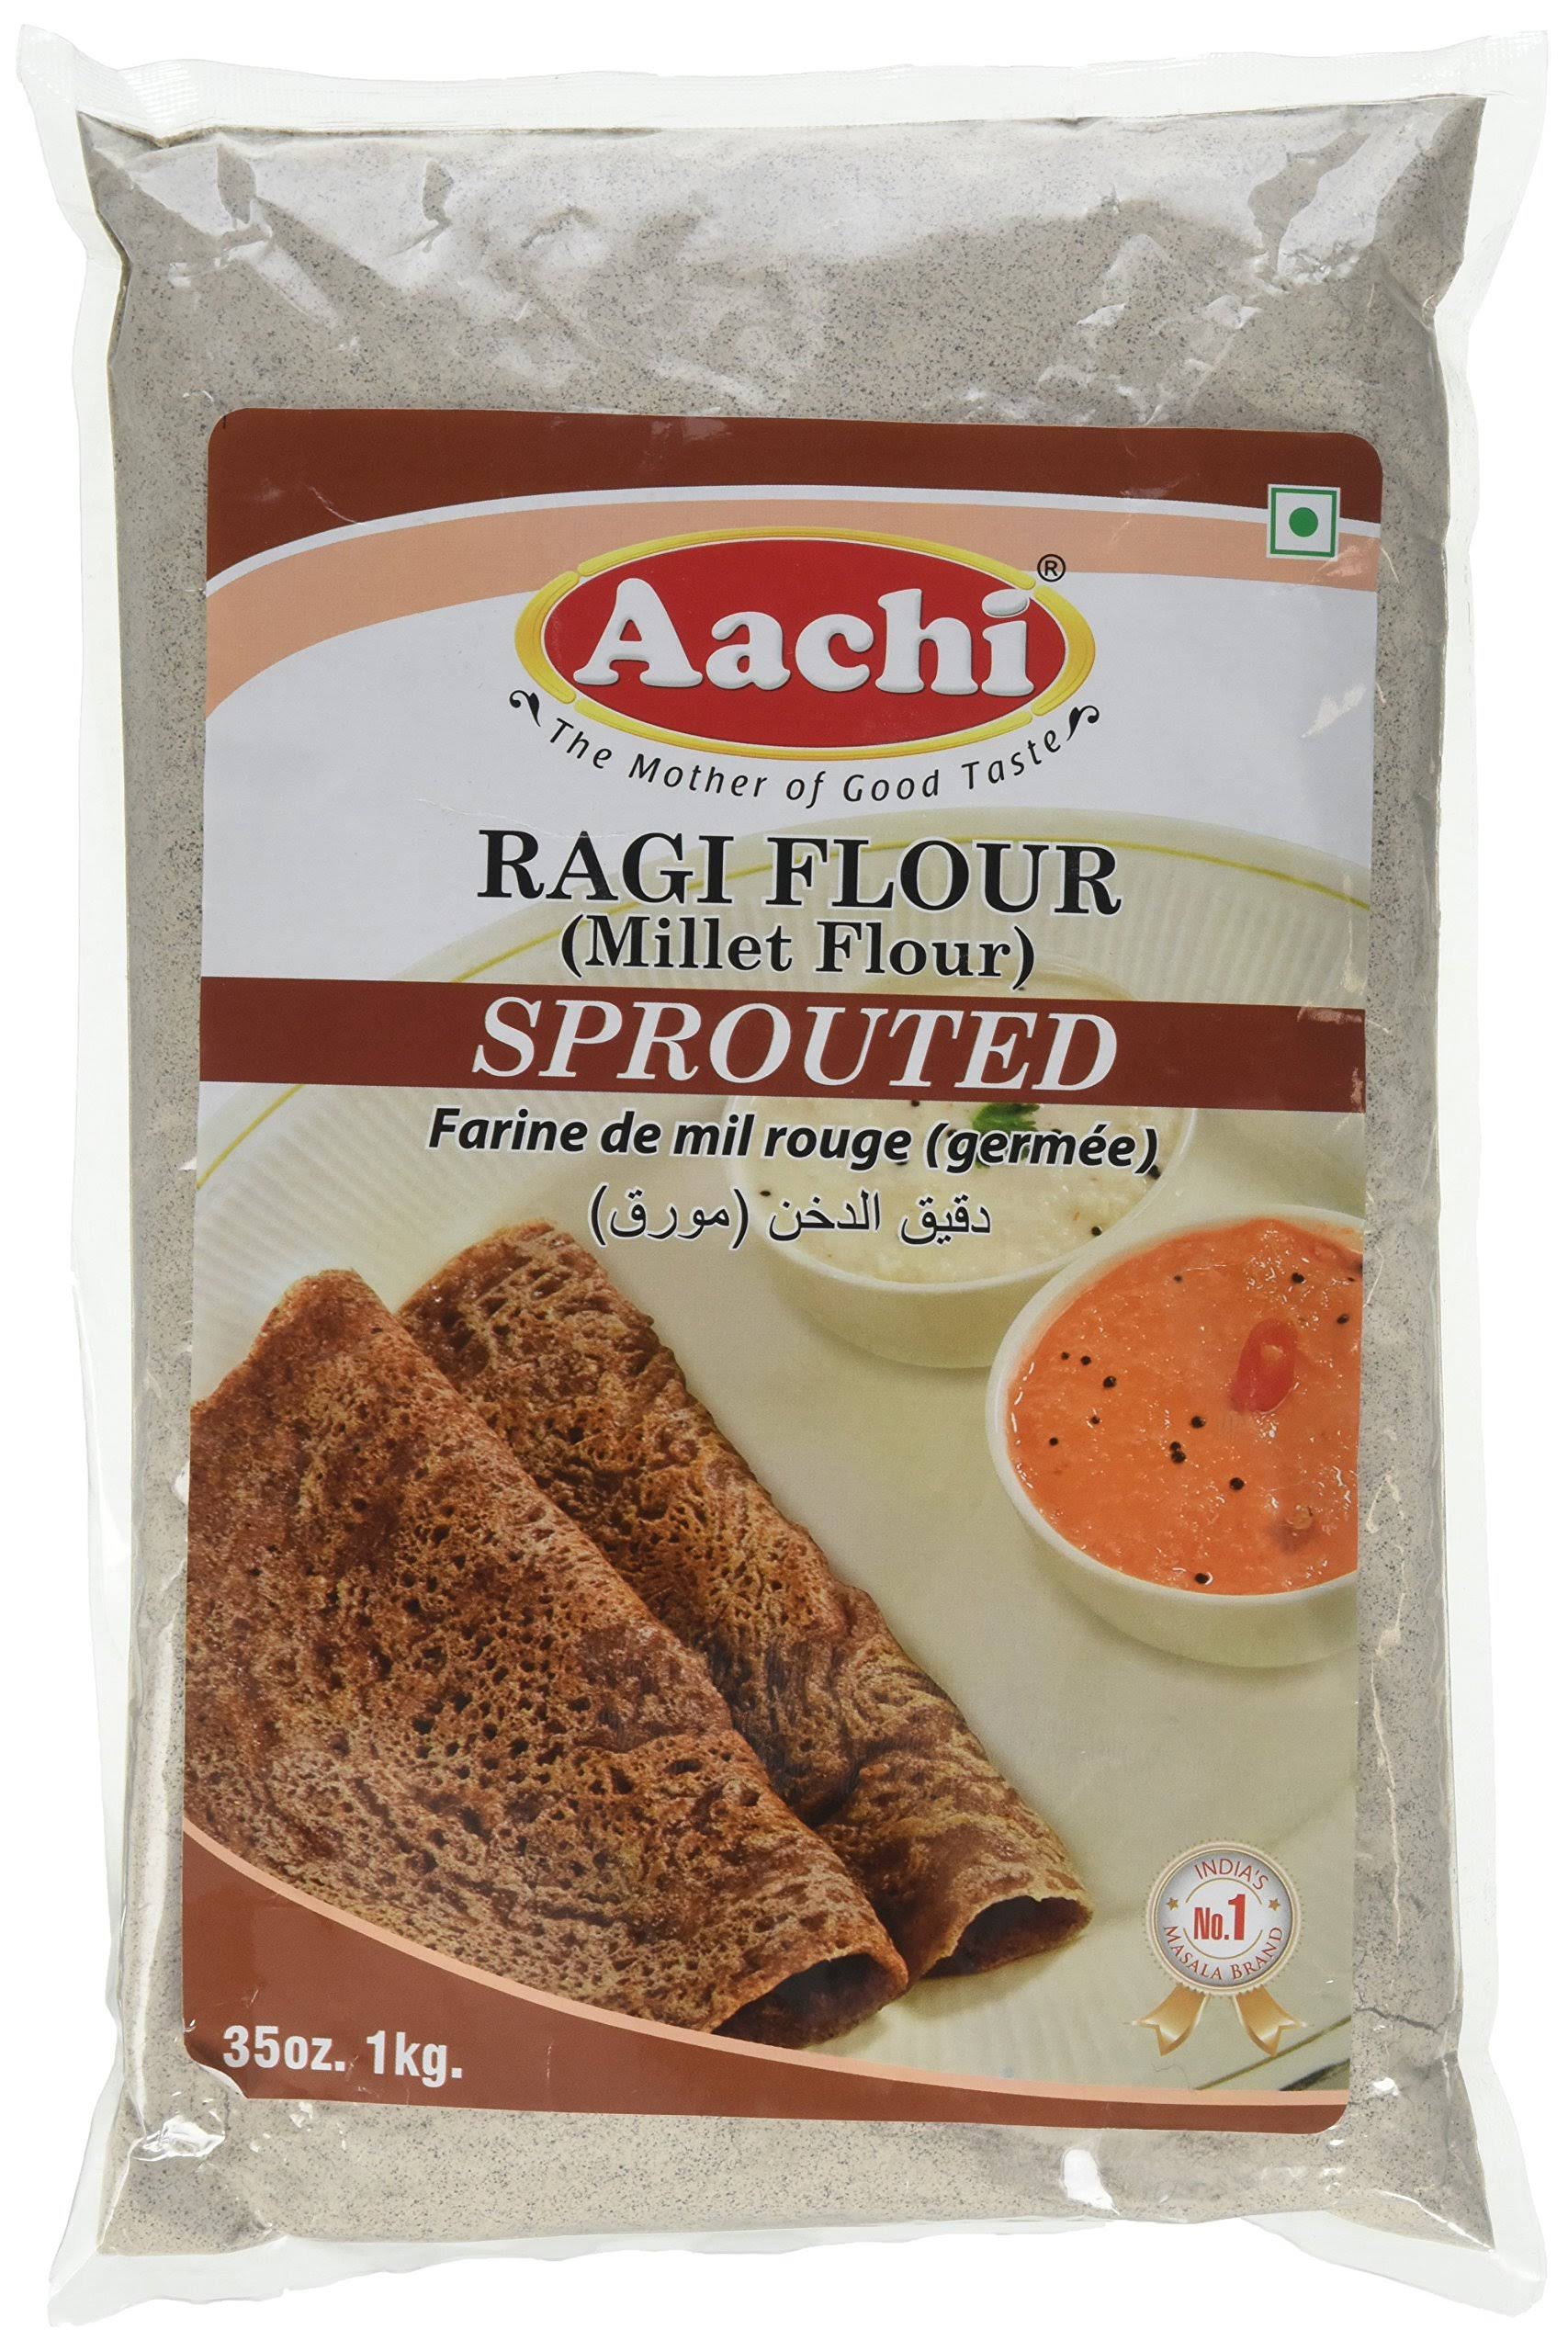 Aachi Ragi Flour - Sprouted, 1kg